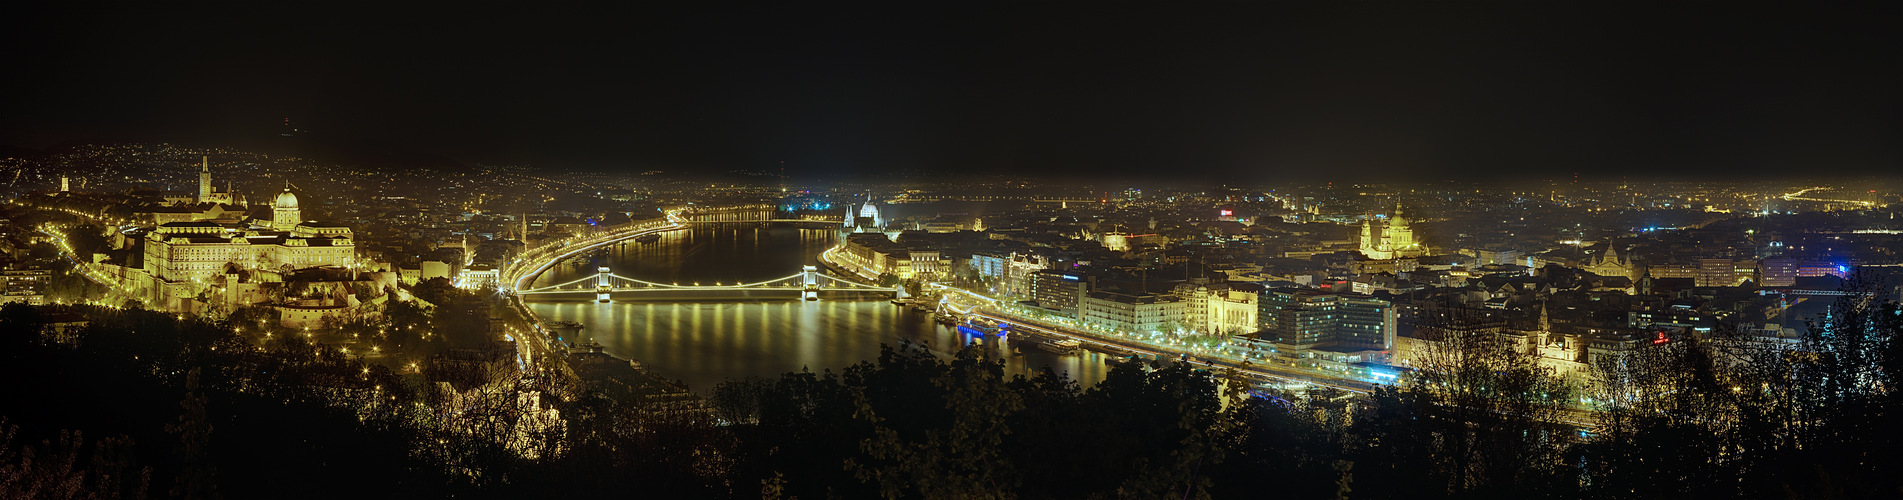 Glowing Budapest - Panorama